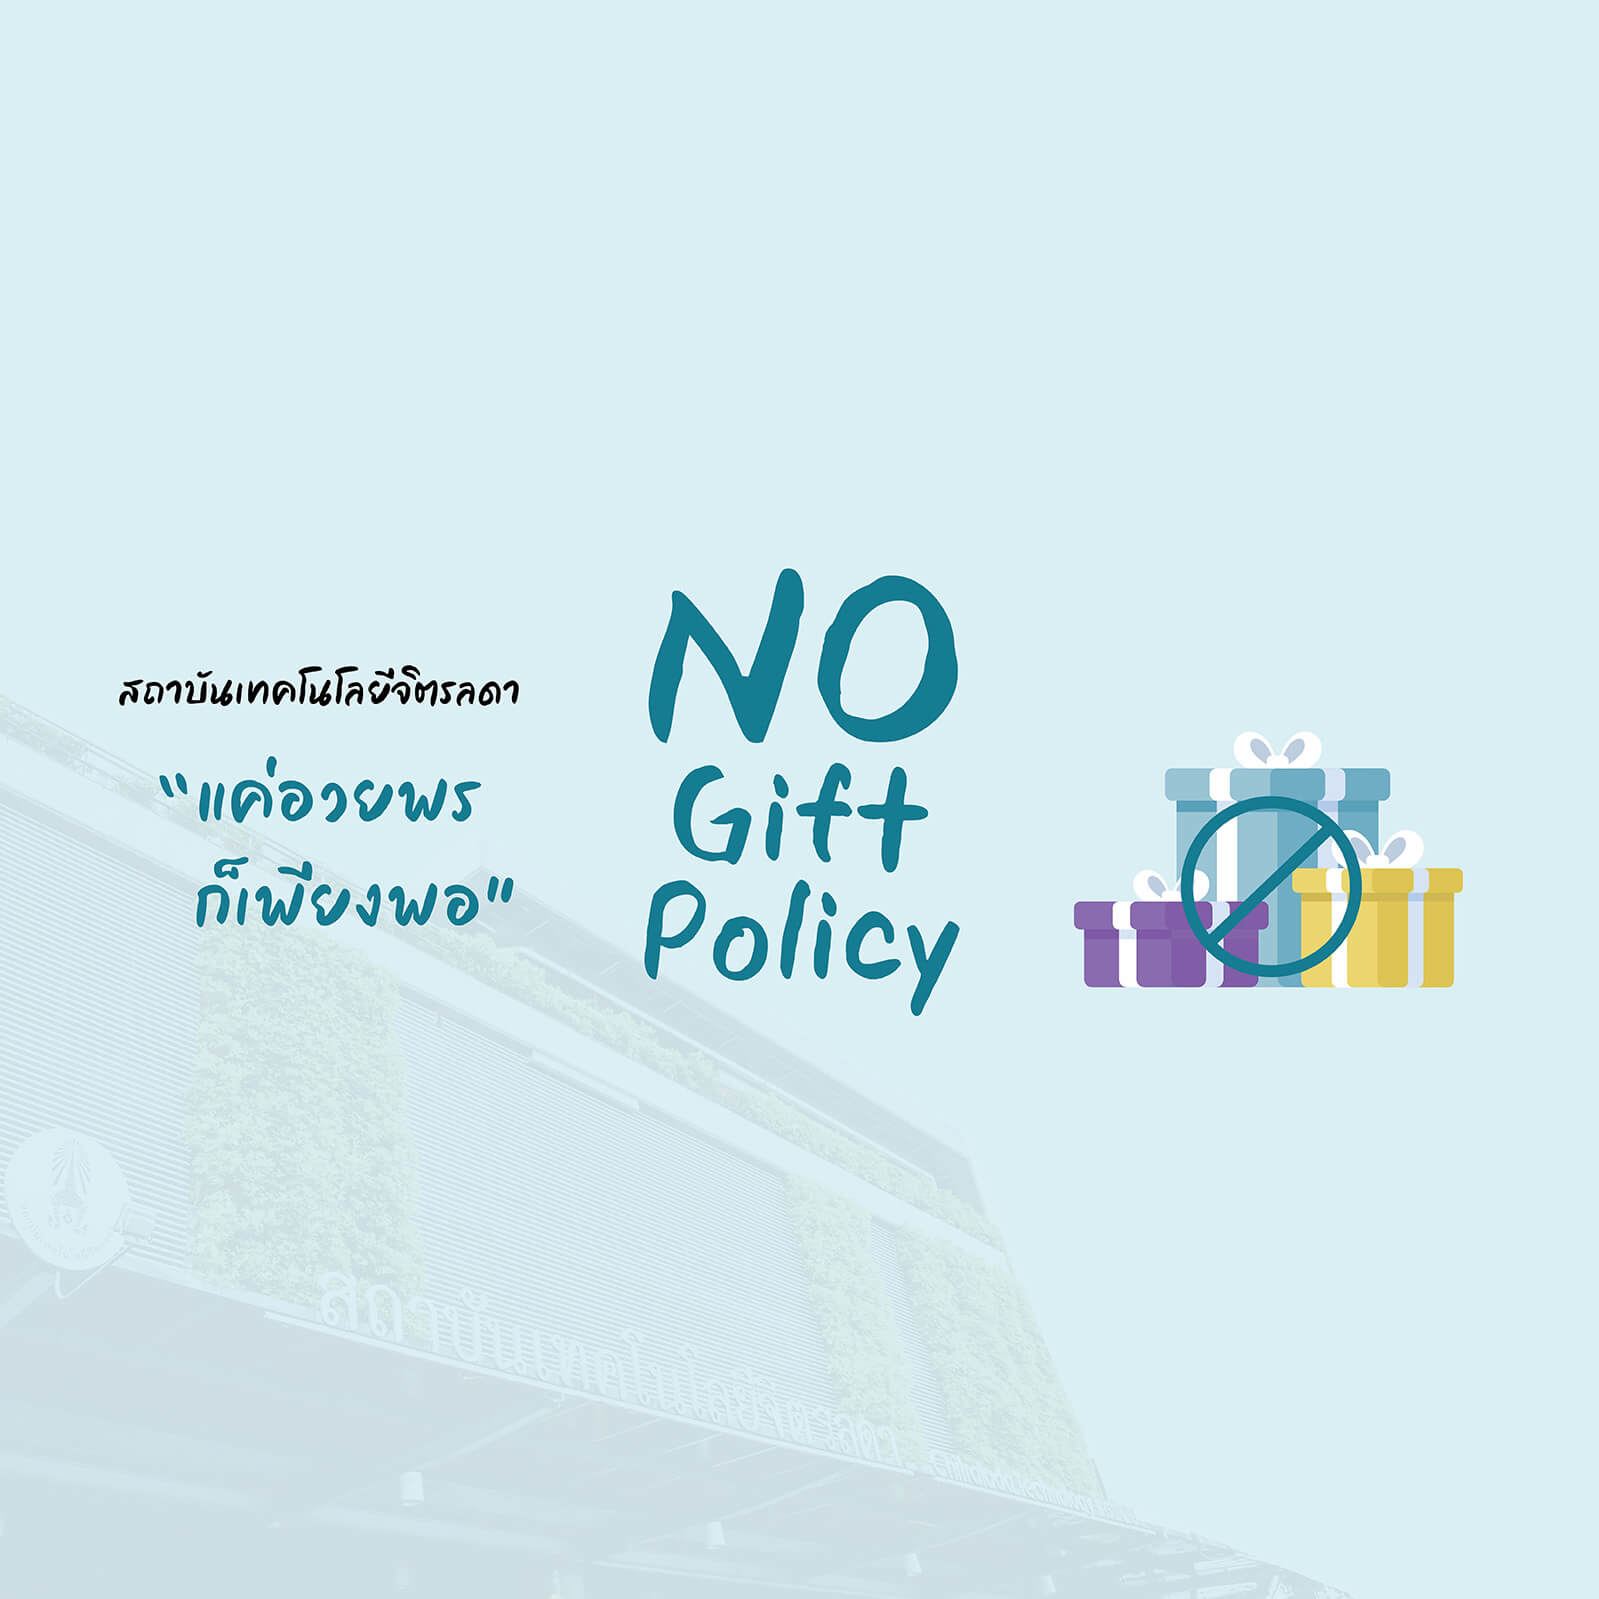 www.cdti.ac.th no gift policy no gift policy1 สถาบันเทคโนโลยีจิตรลดา CDTI